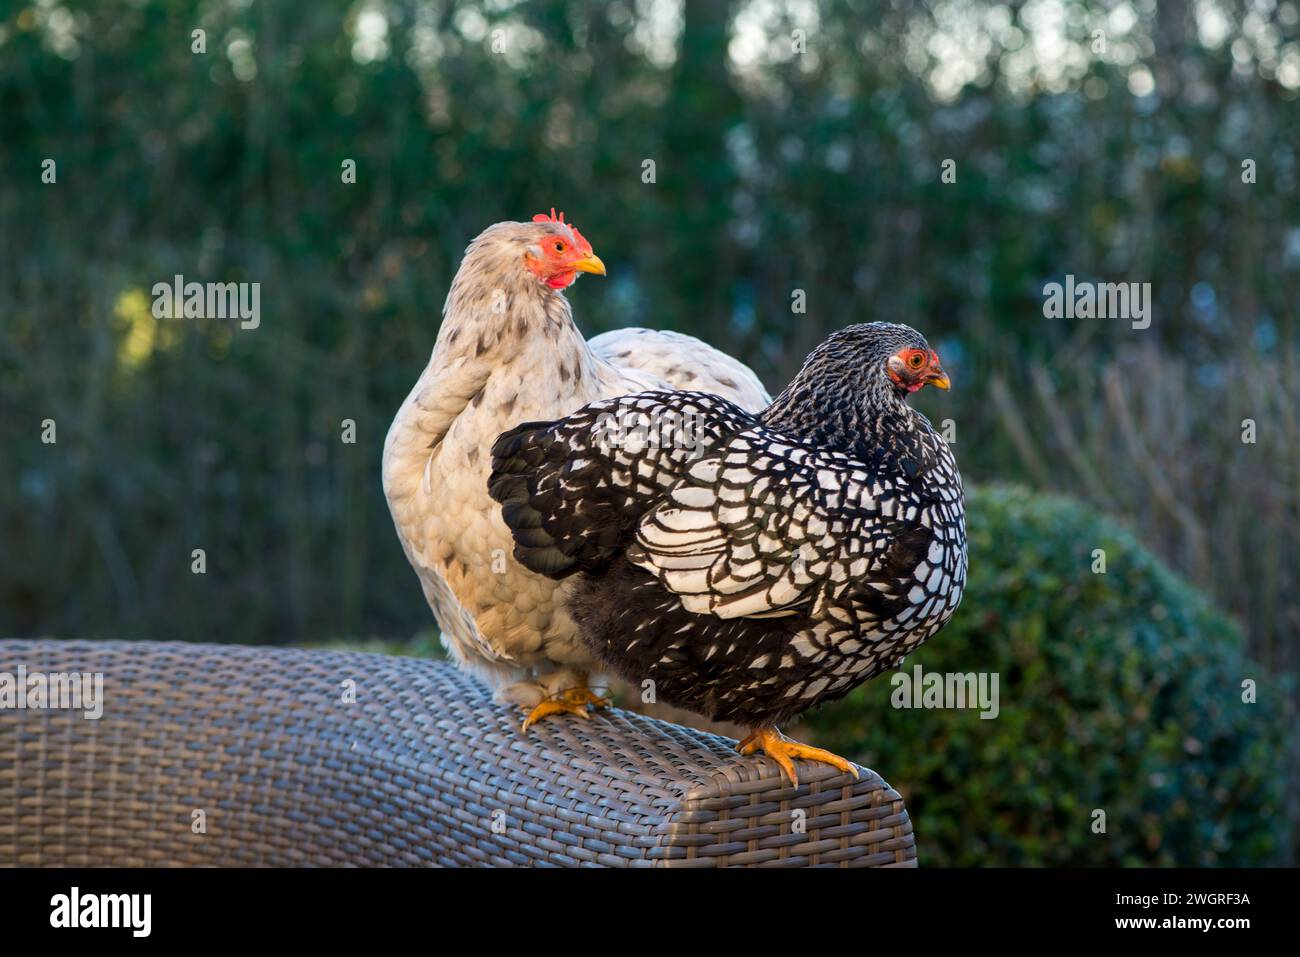 Nederland, 15-02-2019 - OM het huis lopen mooie gezonde sierkippen. Het zijn scharrelkippen die ook nog eieren leggen. foto: Patricia Rehe / Hollandse Hoogte Stockfoto